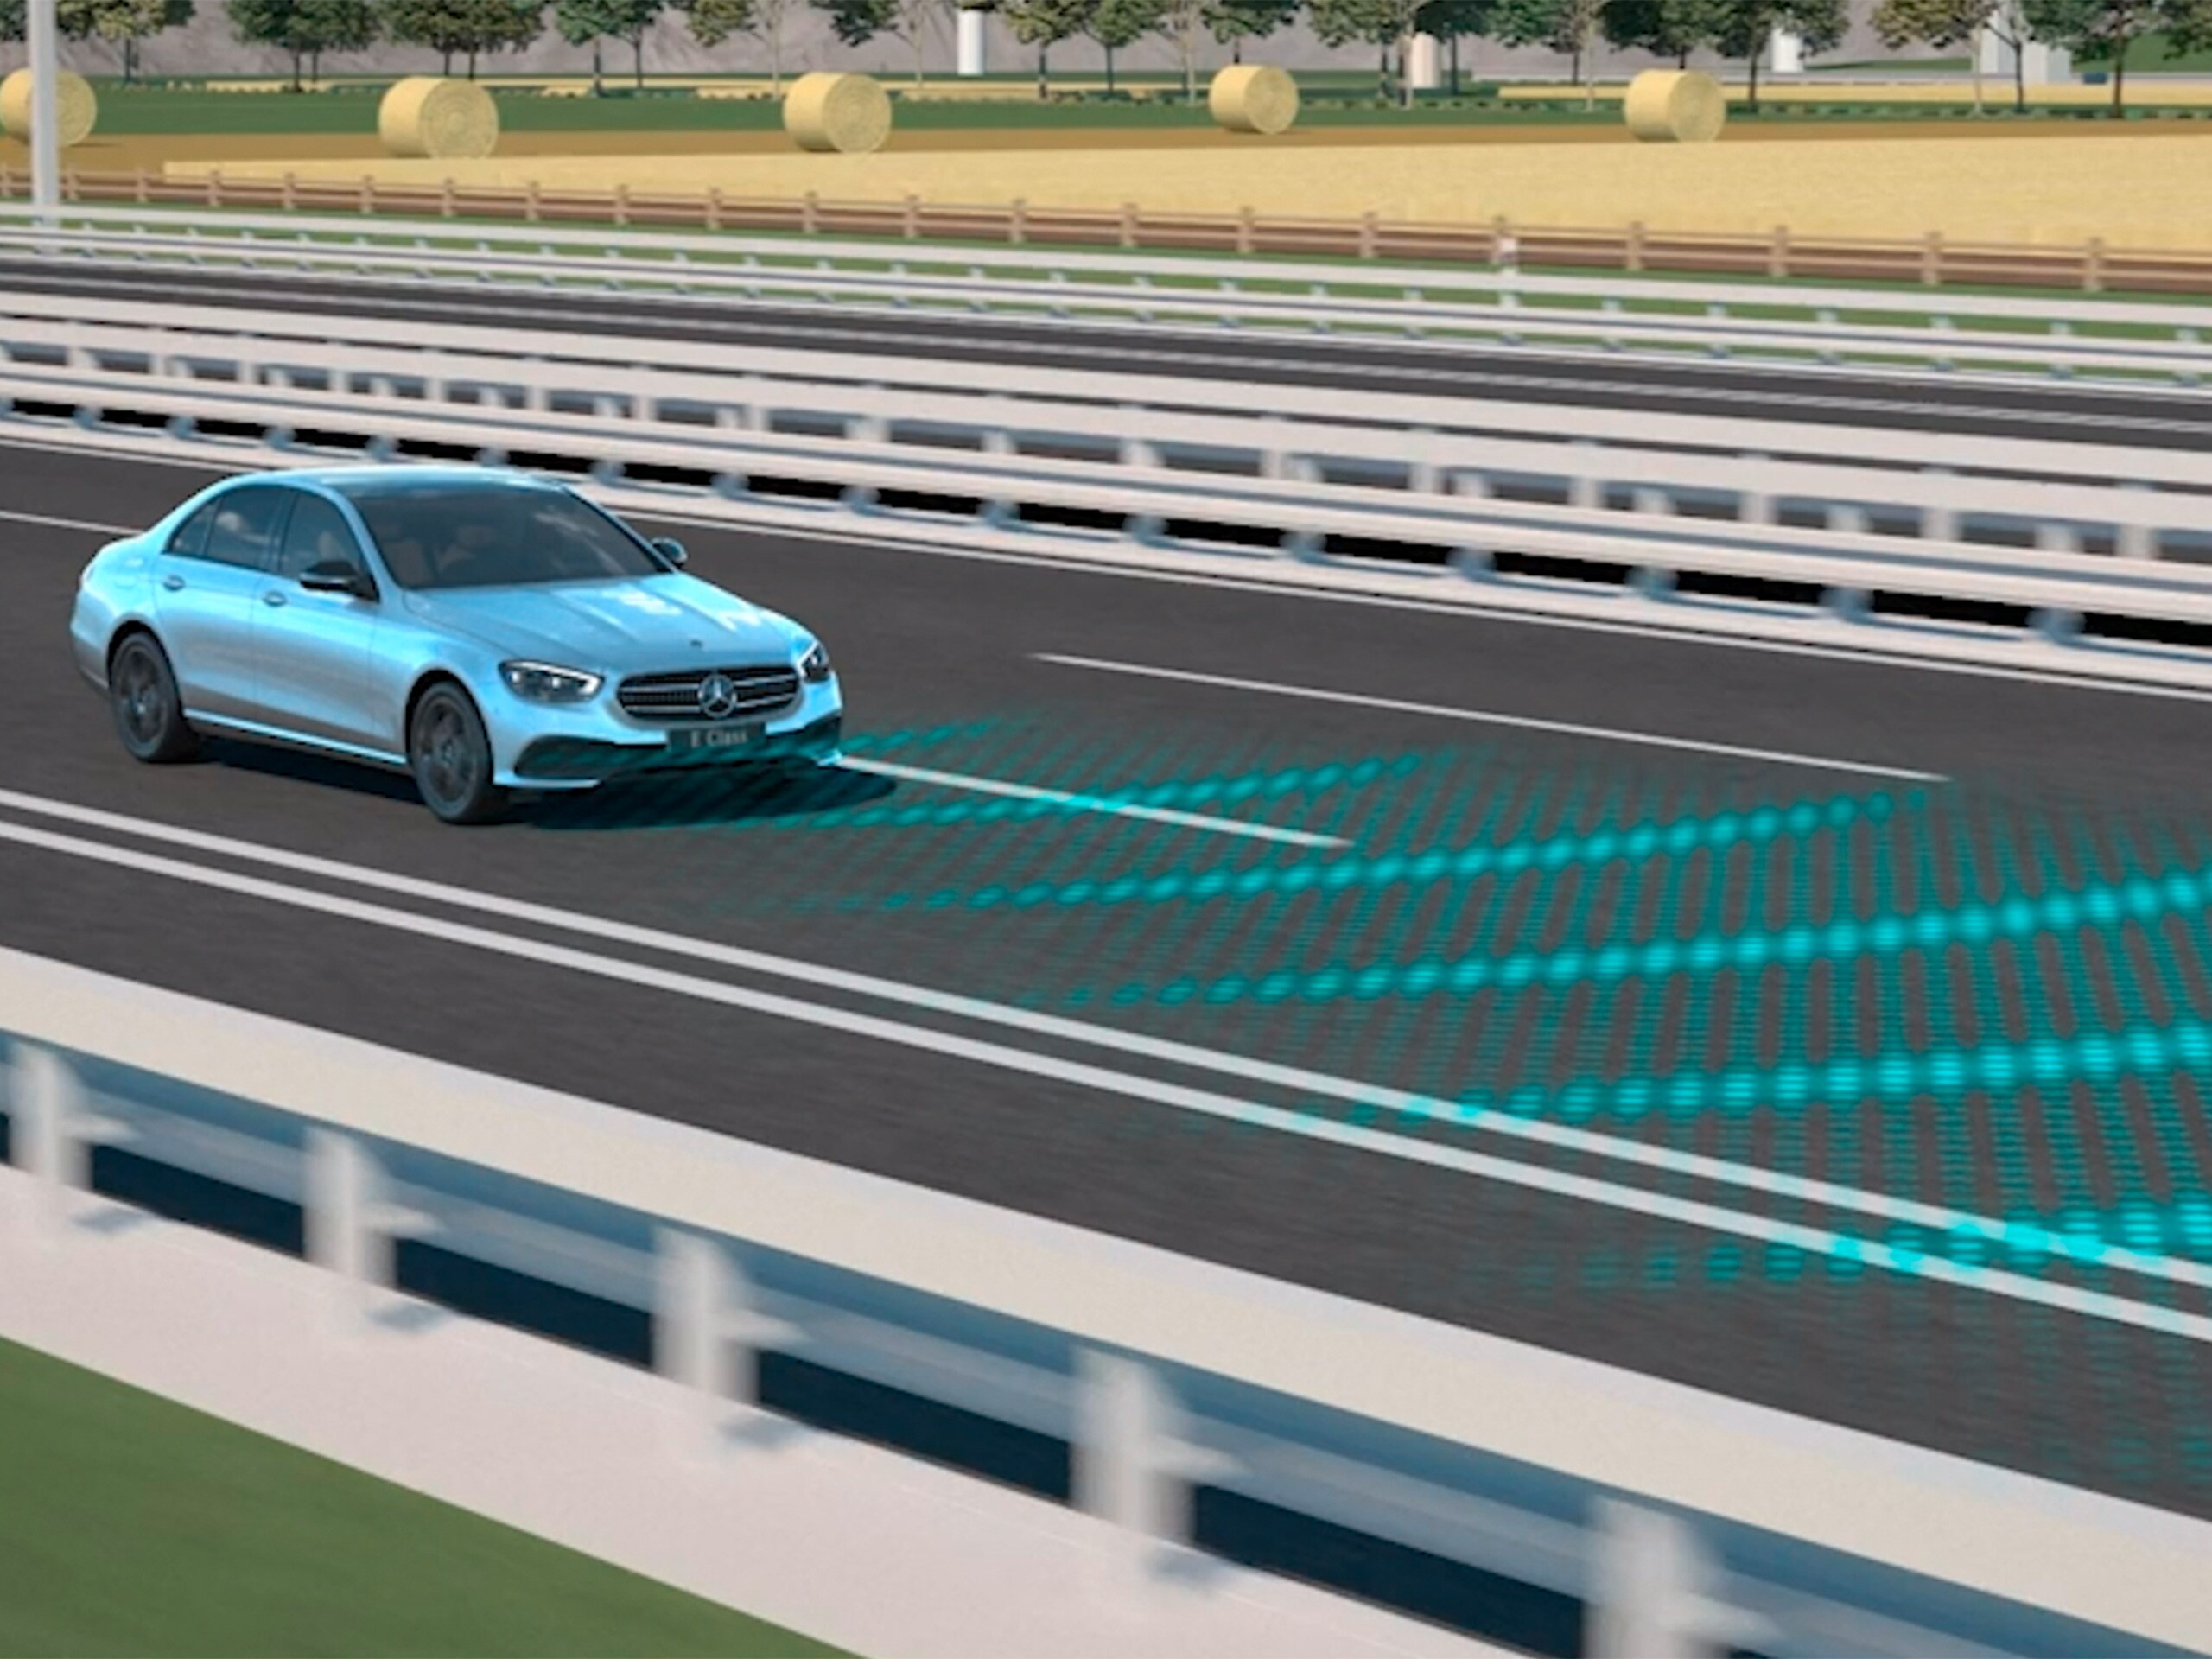 De video toont de werking van de actieve afstandsassistent DISTRONIC in de Mercedes-Benz CLS Coupé.